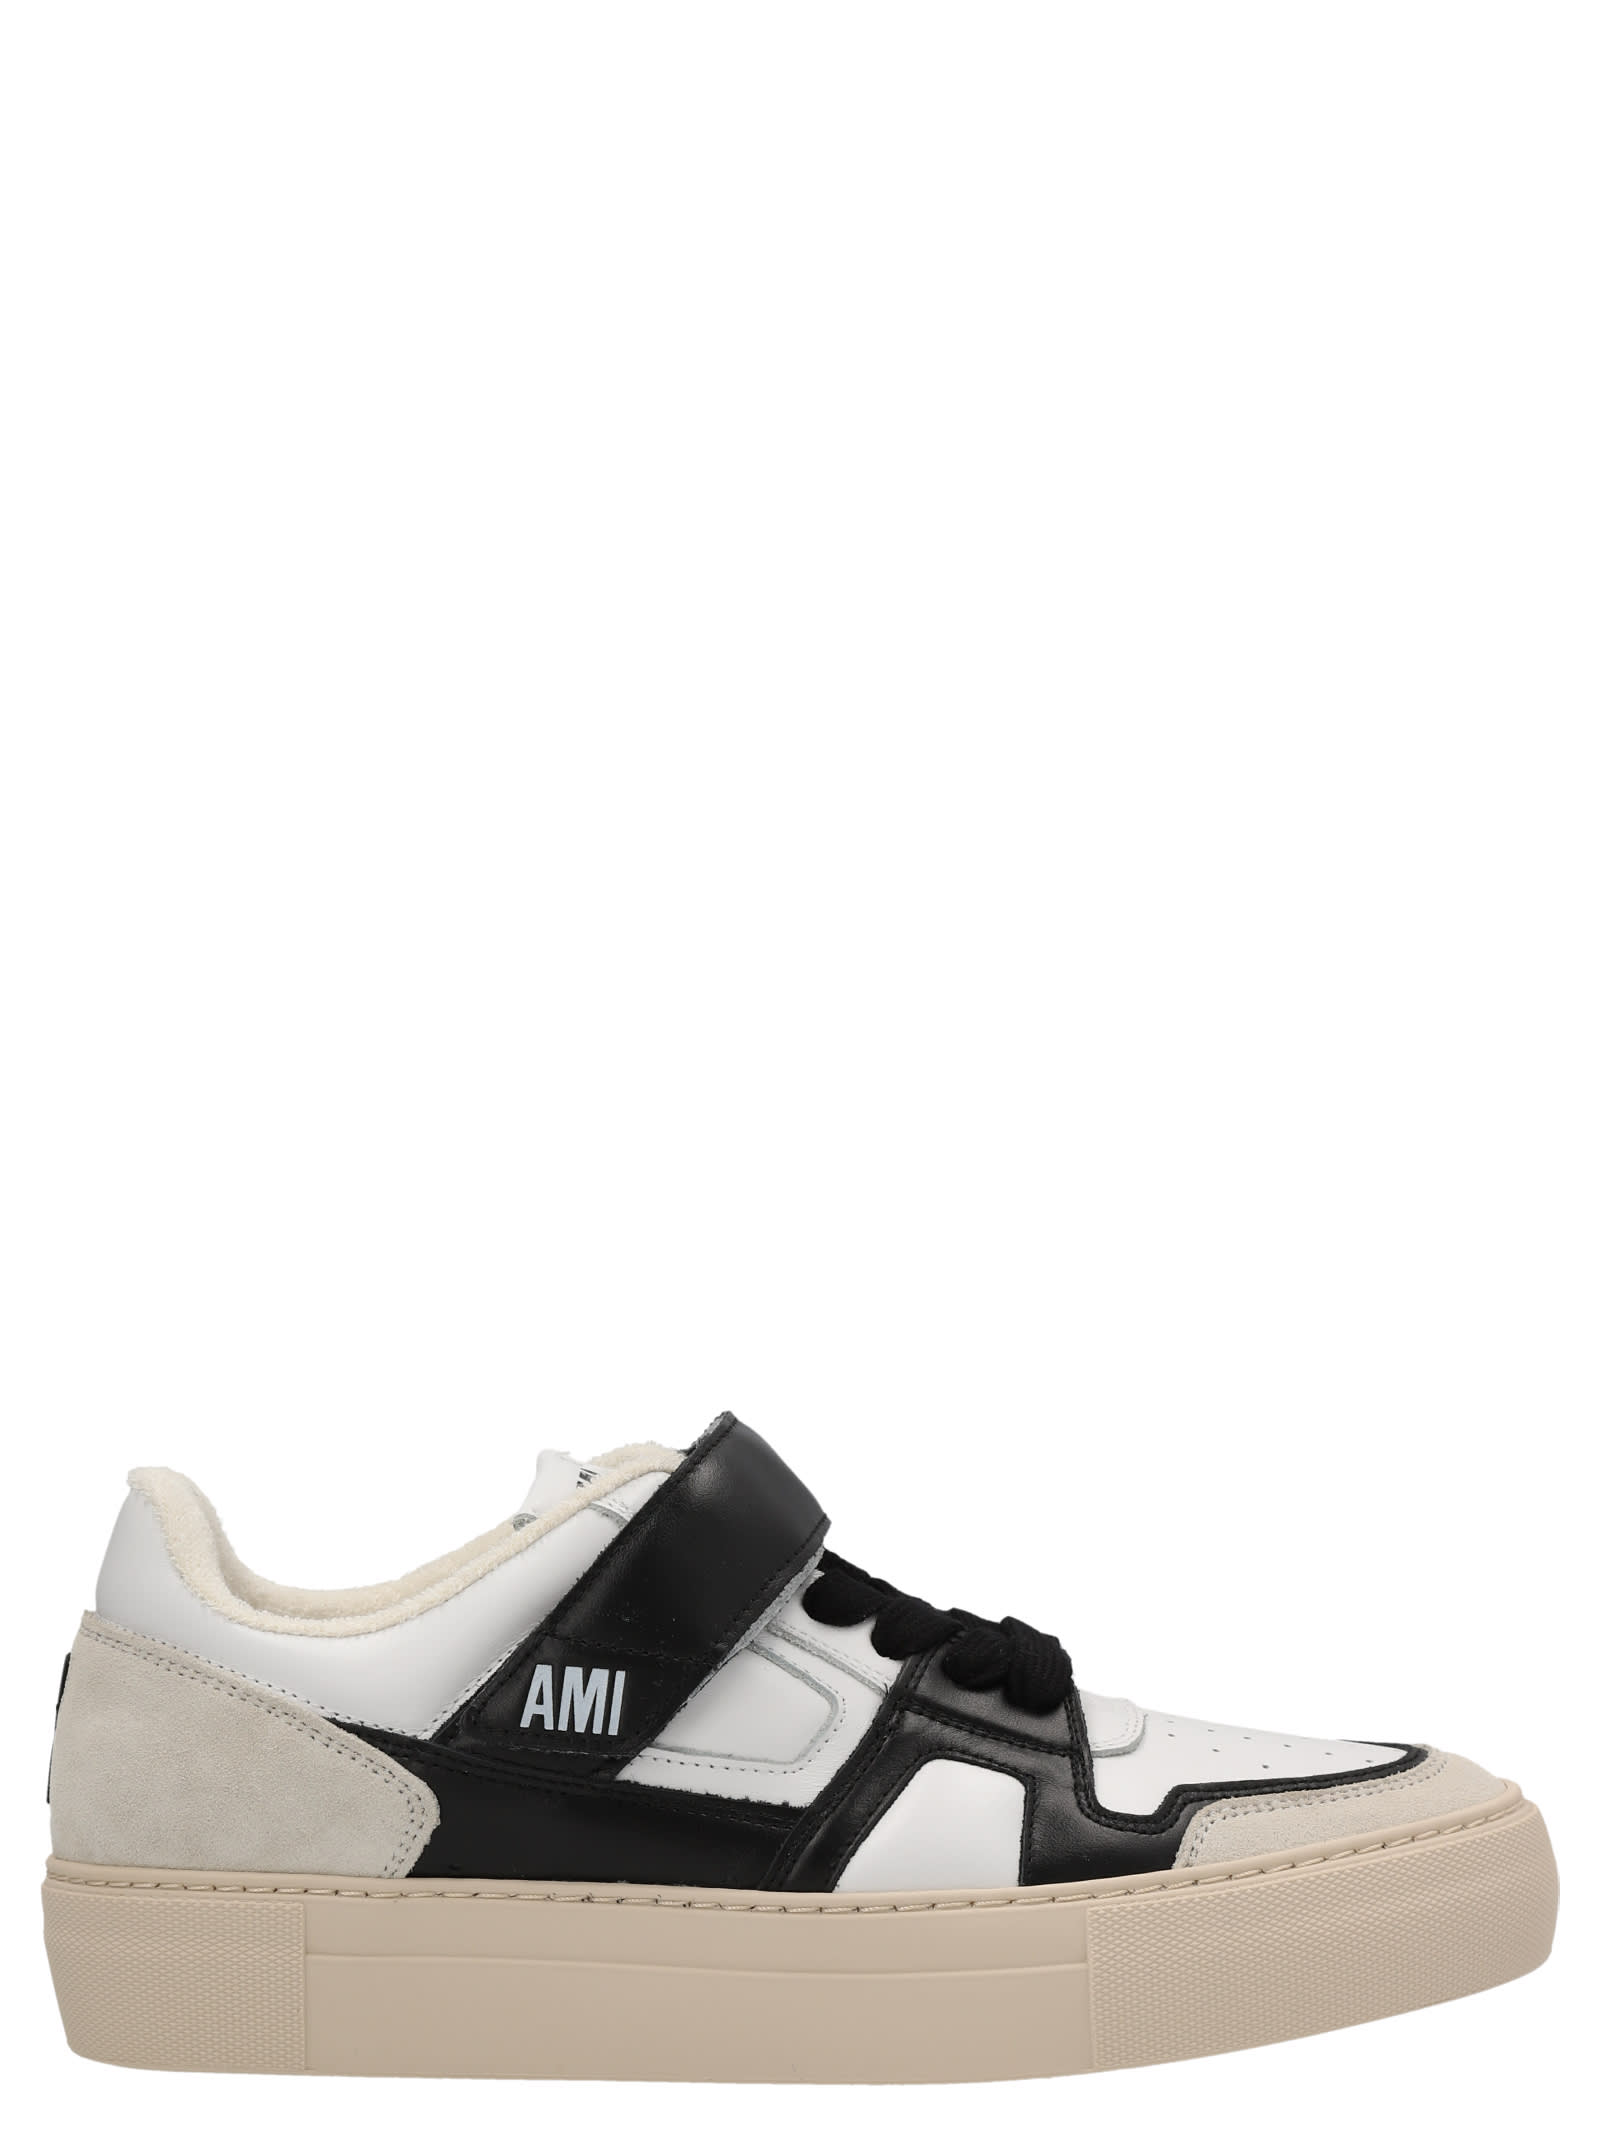 Ami Alexandre Mattiussi Two-color Logo Sneakers